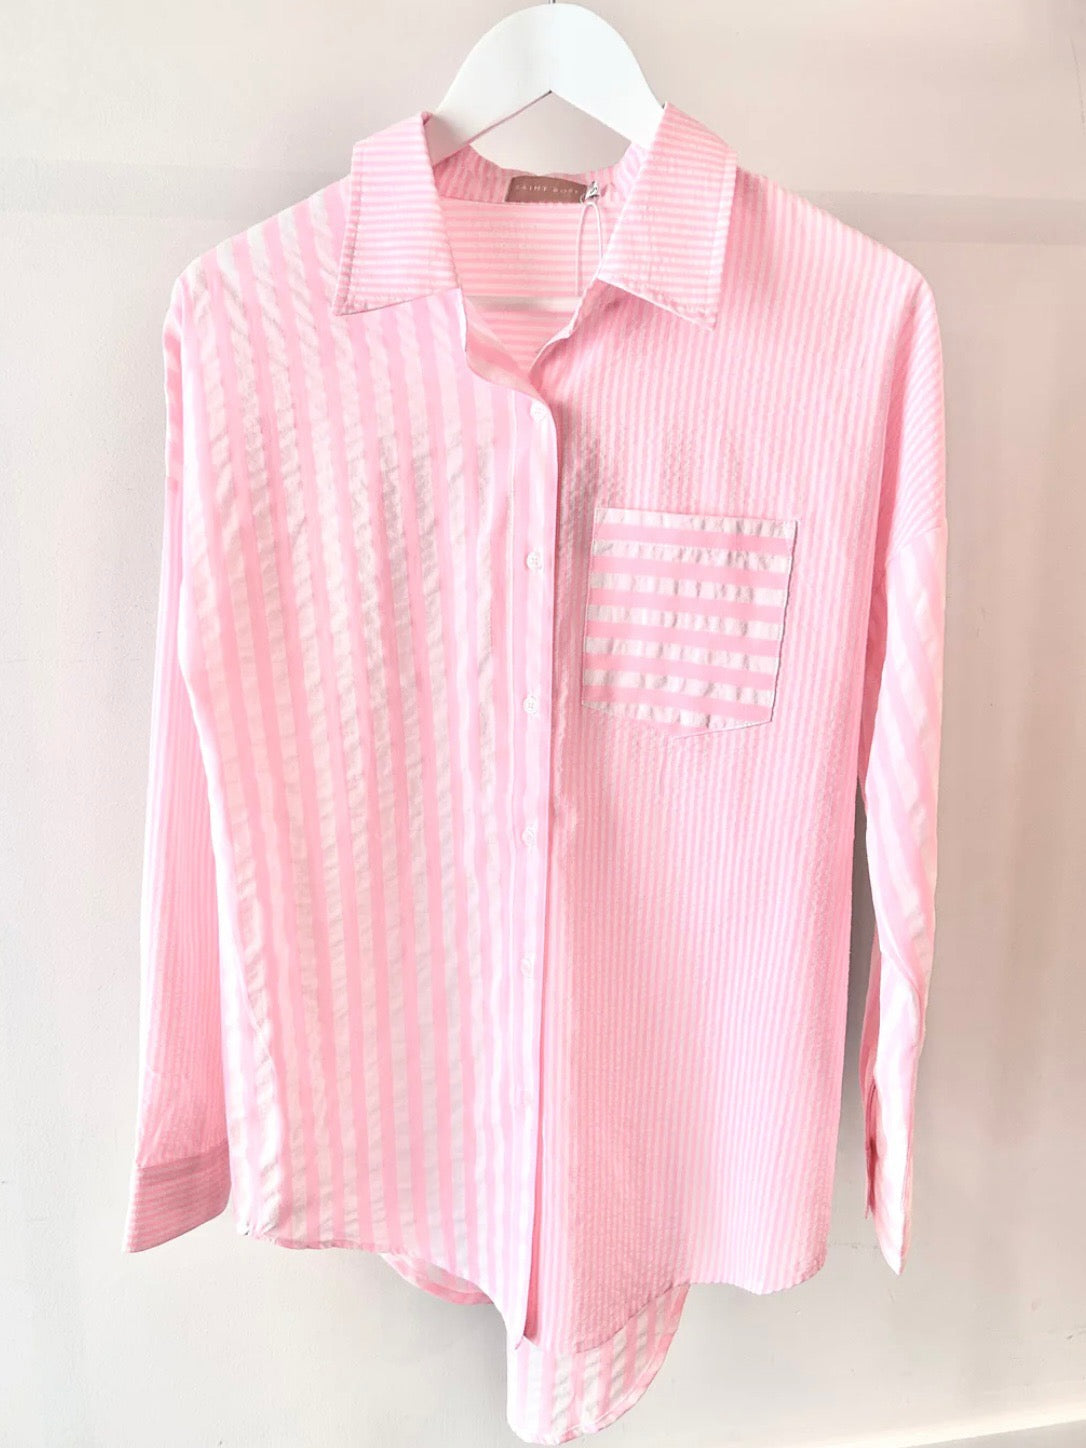 Laguna Shirt : Pink / White Stripe : Saint Rose